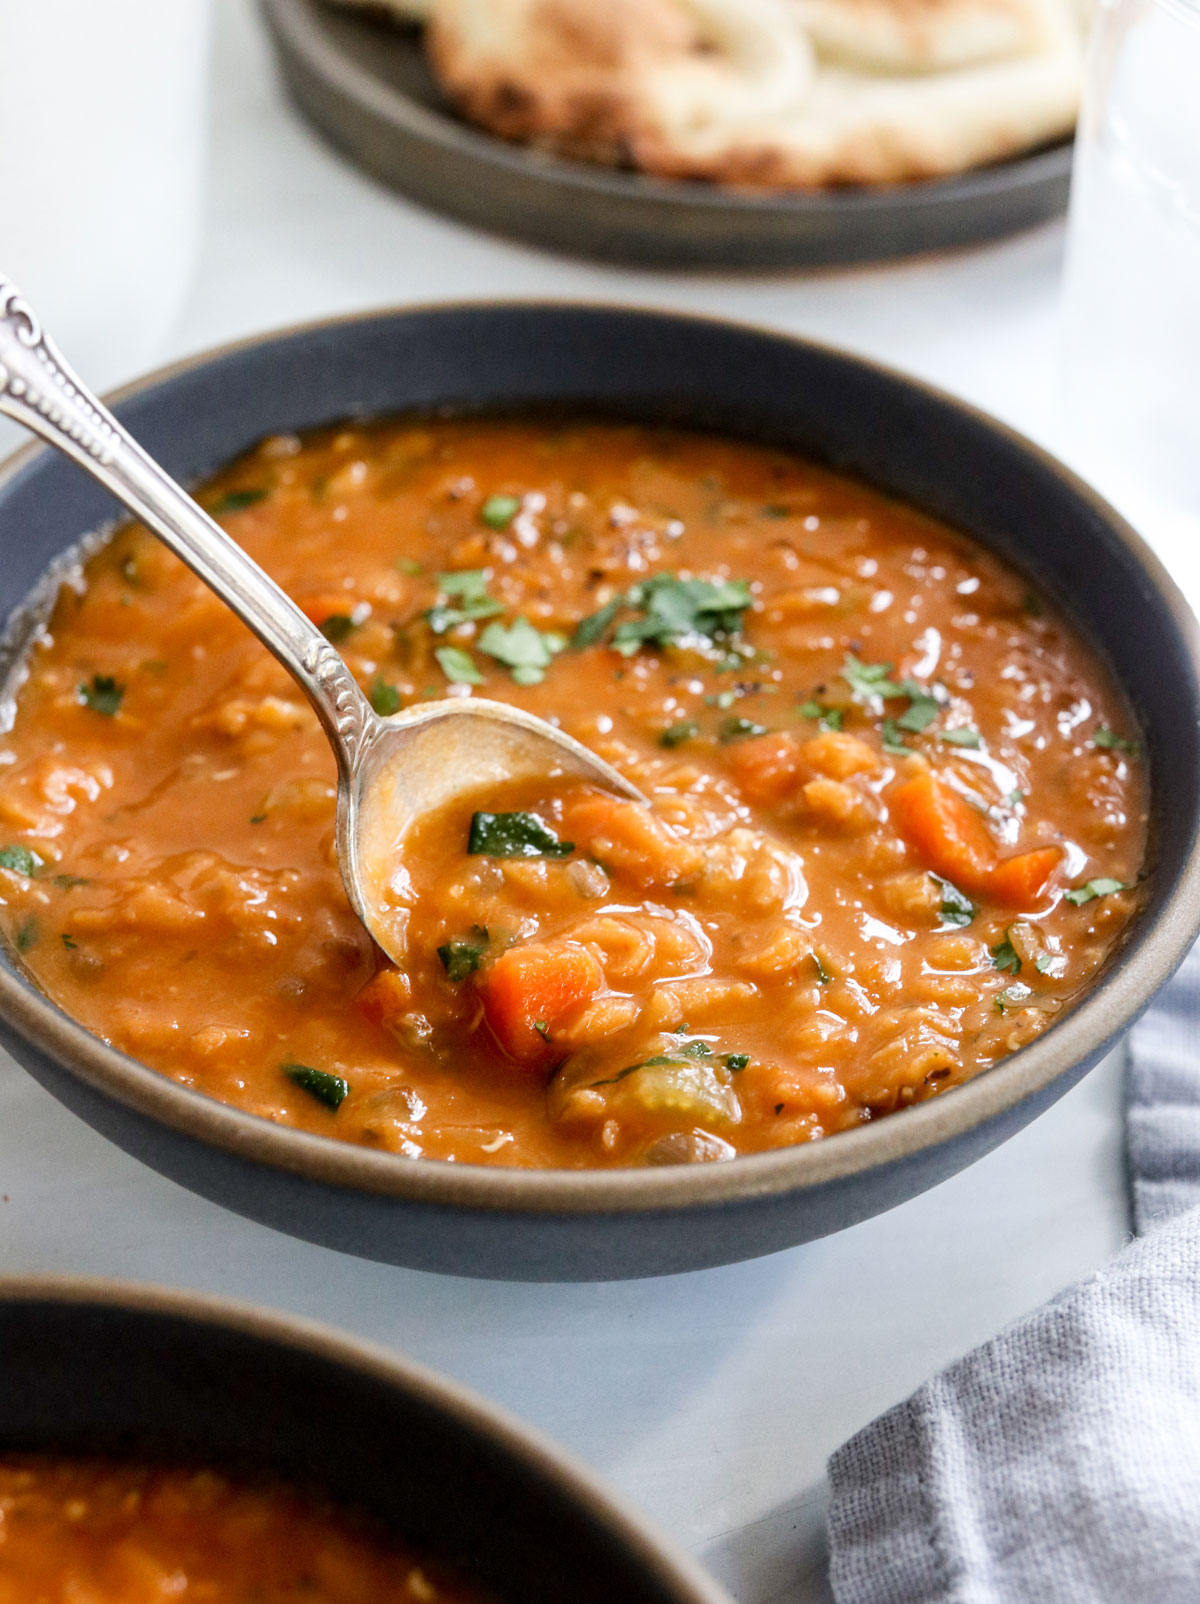 cucchiaio sollevando la zuppa di lenticchie rosse da una ciotola nera.